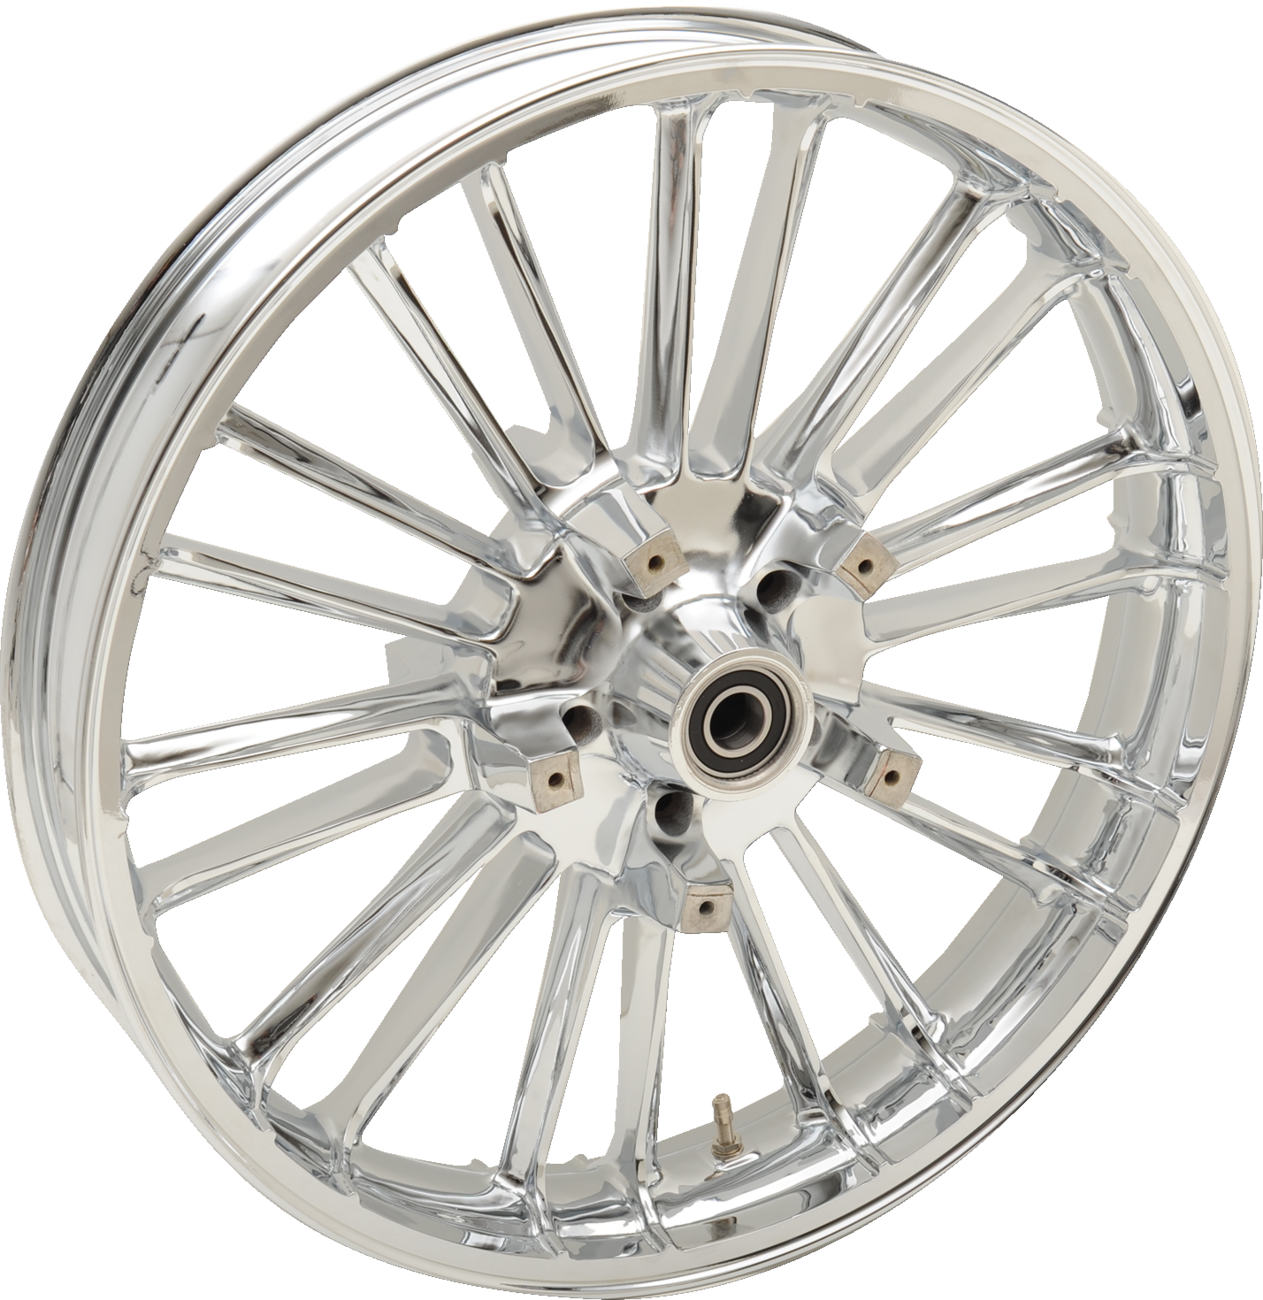 Rear Wheel - Atlantic 3D - Single Disc/ABS - Chrome - 18"x5.50"